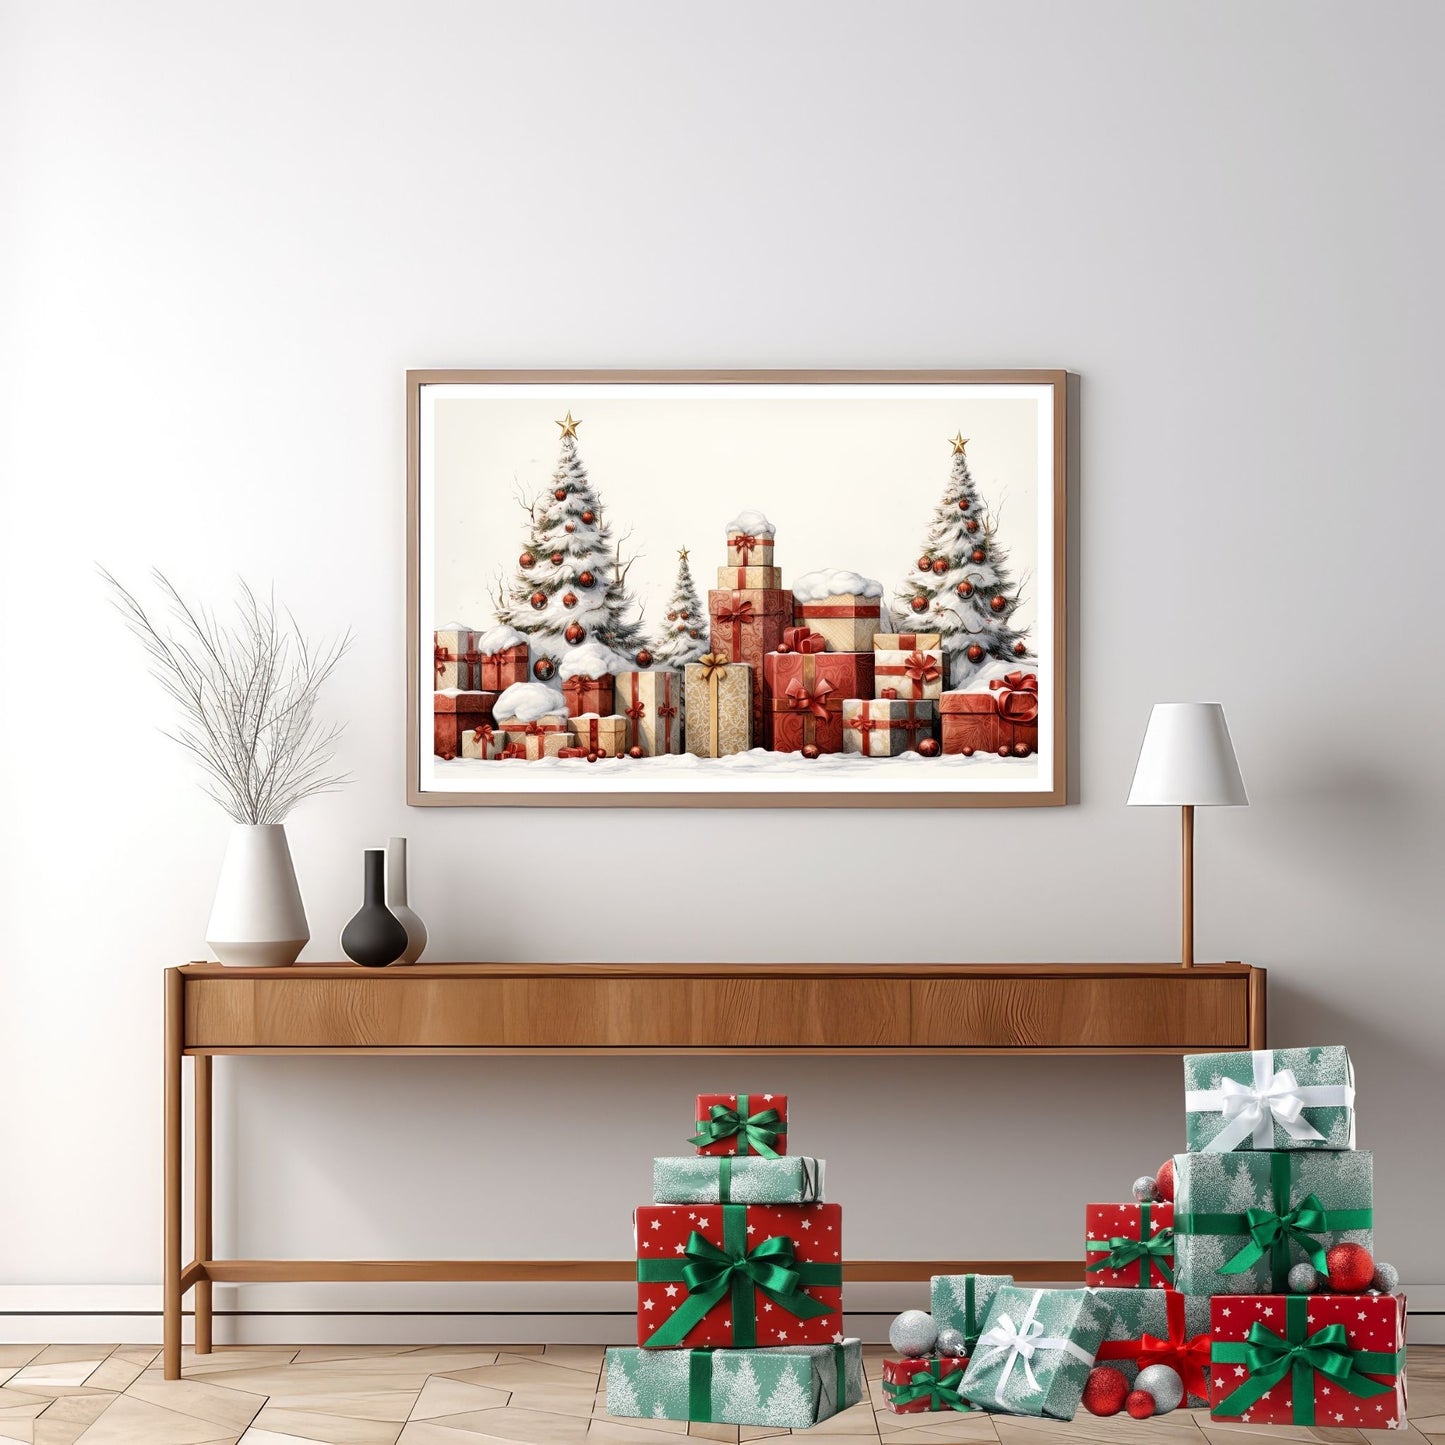 Tre juletre med julepynt og mange julepakker som står ute i snøen.  Illustrasjonen viser motivet som plakat i eike ramme som henger på en vegg over en sjenk.